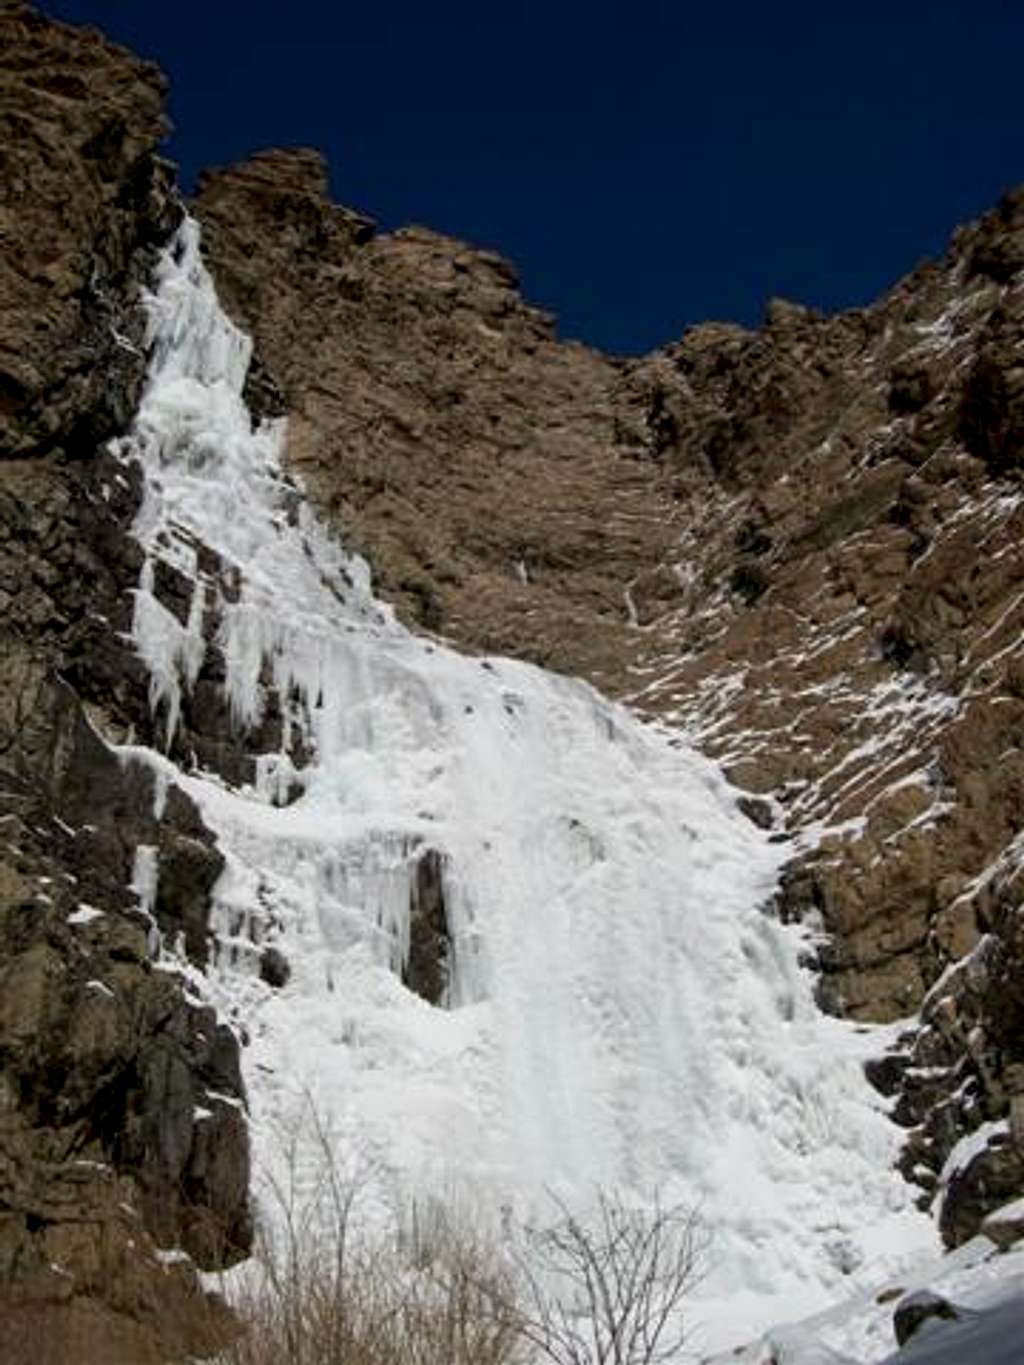 Waterfall Canyon